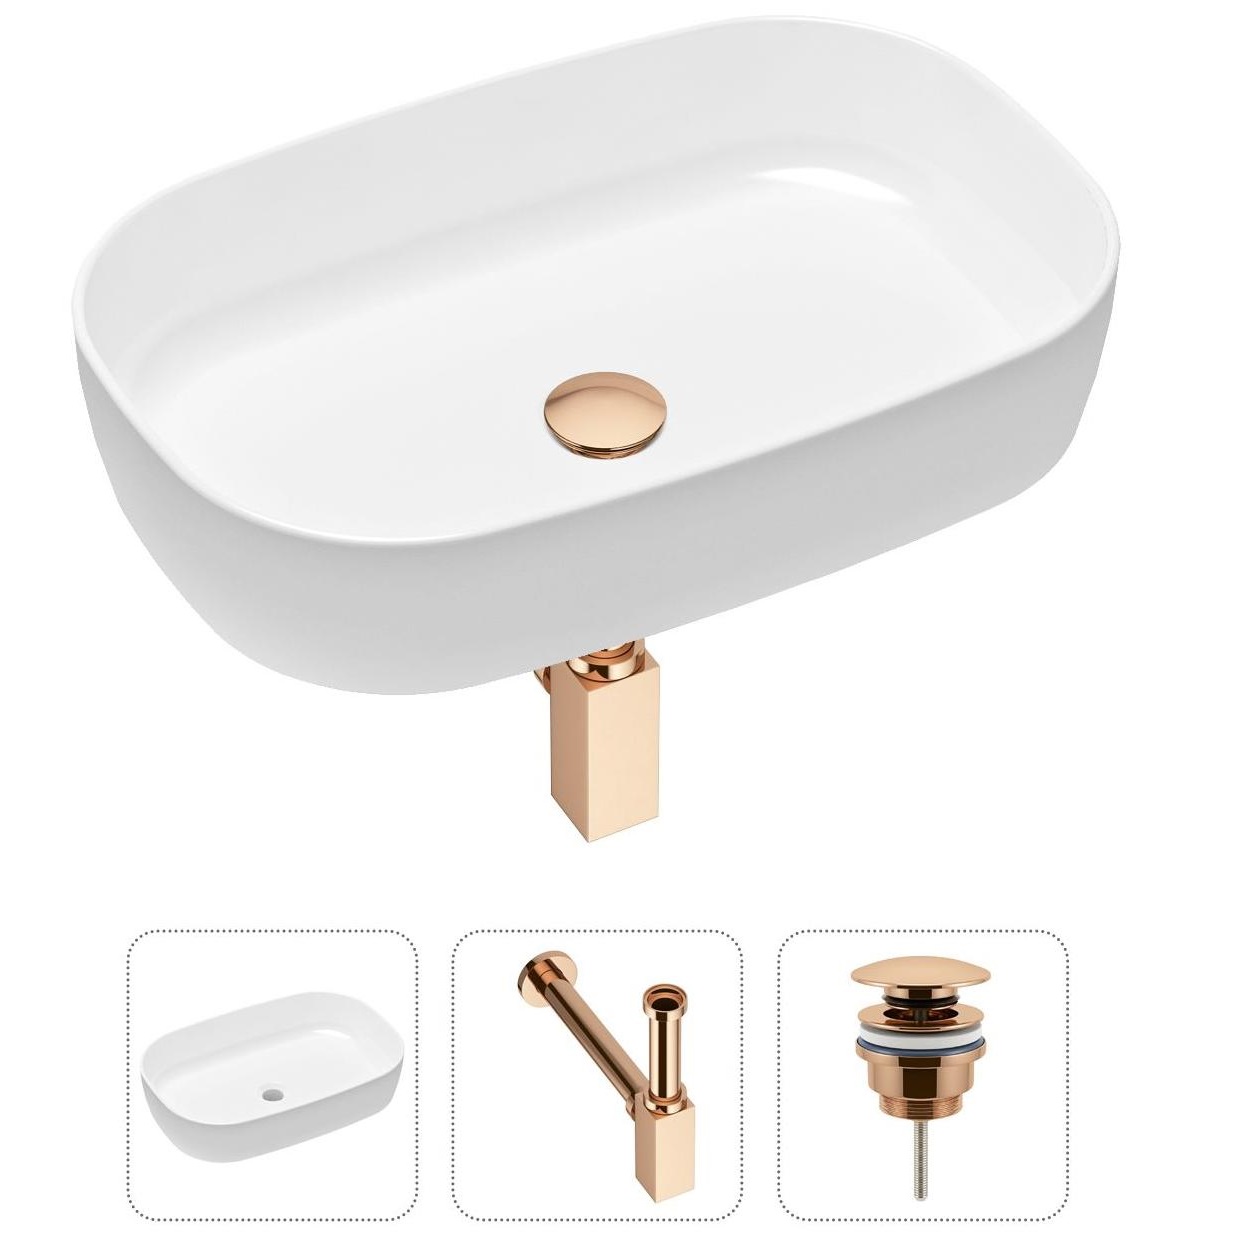 Комплект 3 в 1 Lavinia Boho Bathroom Sink 21520076: накладная фарфоровая раковина 54 см, металлический сифон, донный клапан